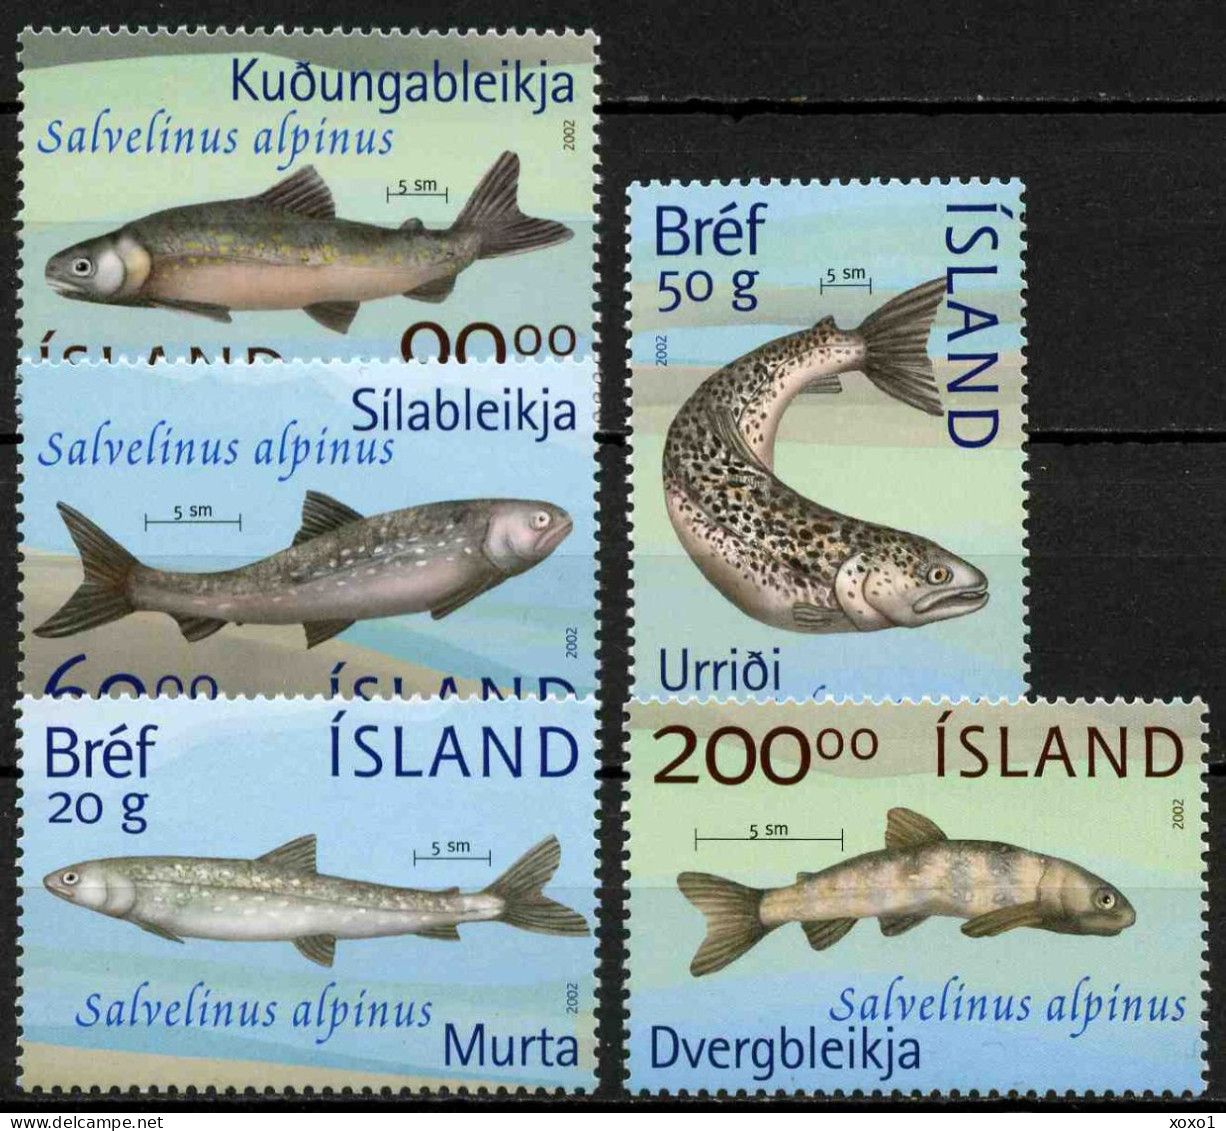 Iceland 2002 MiNr. 1012 - 1016 Island  Marine Life, Fishes 5v MNH**  15,00 € - Fishes